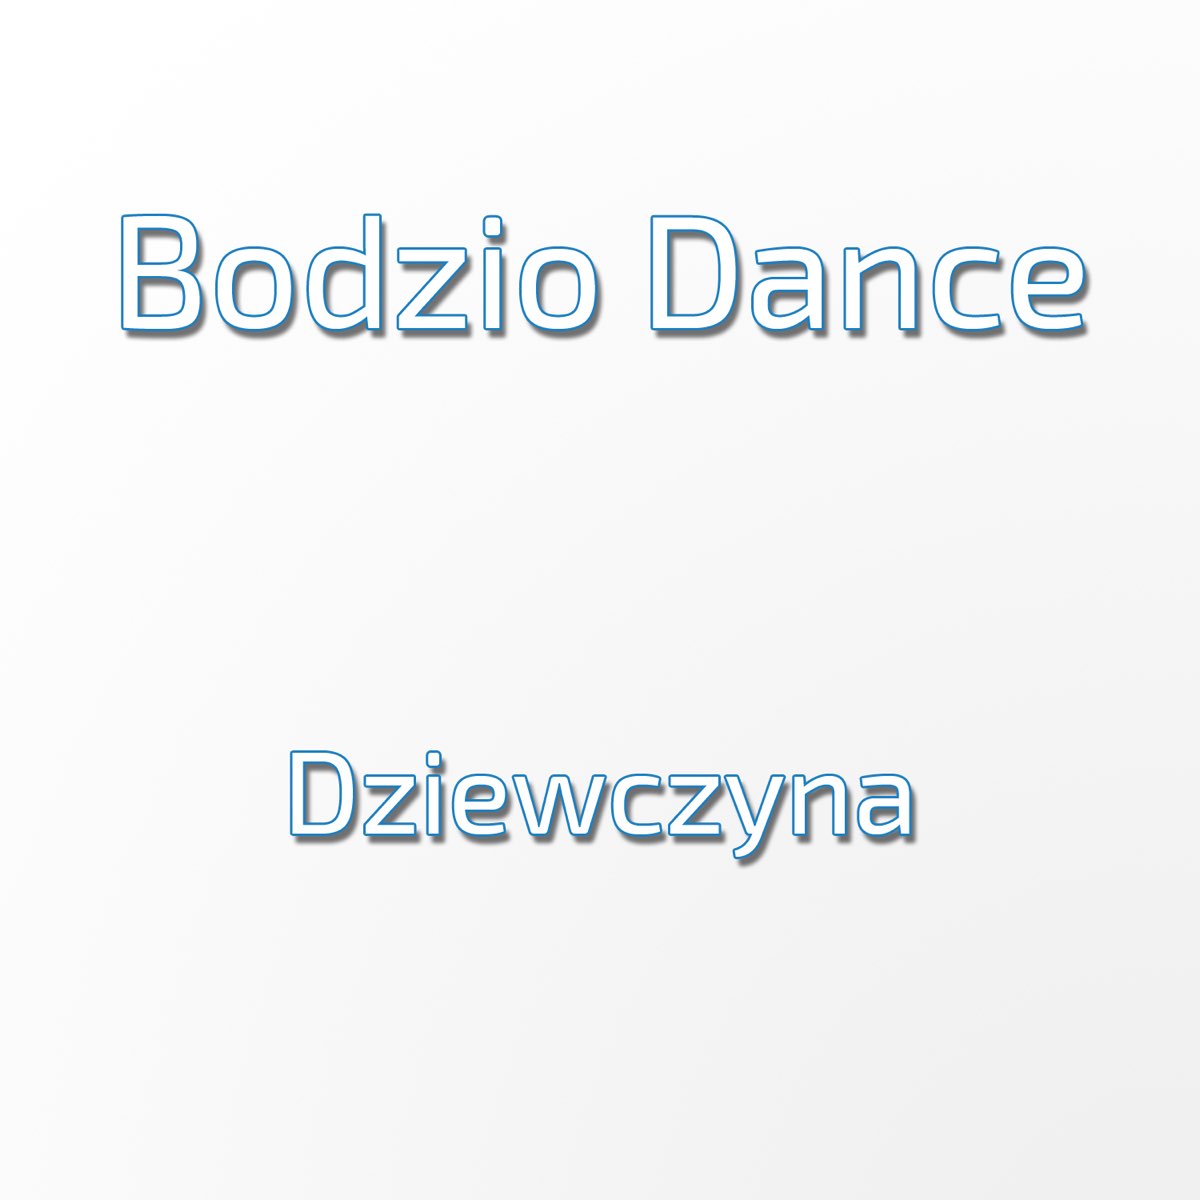 Dziewczyna - Single by Bodzio Dance on Apple Music